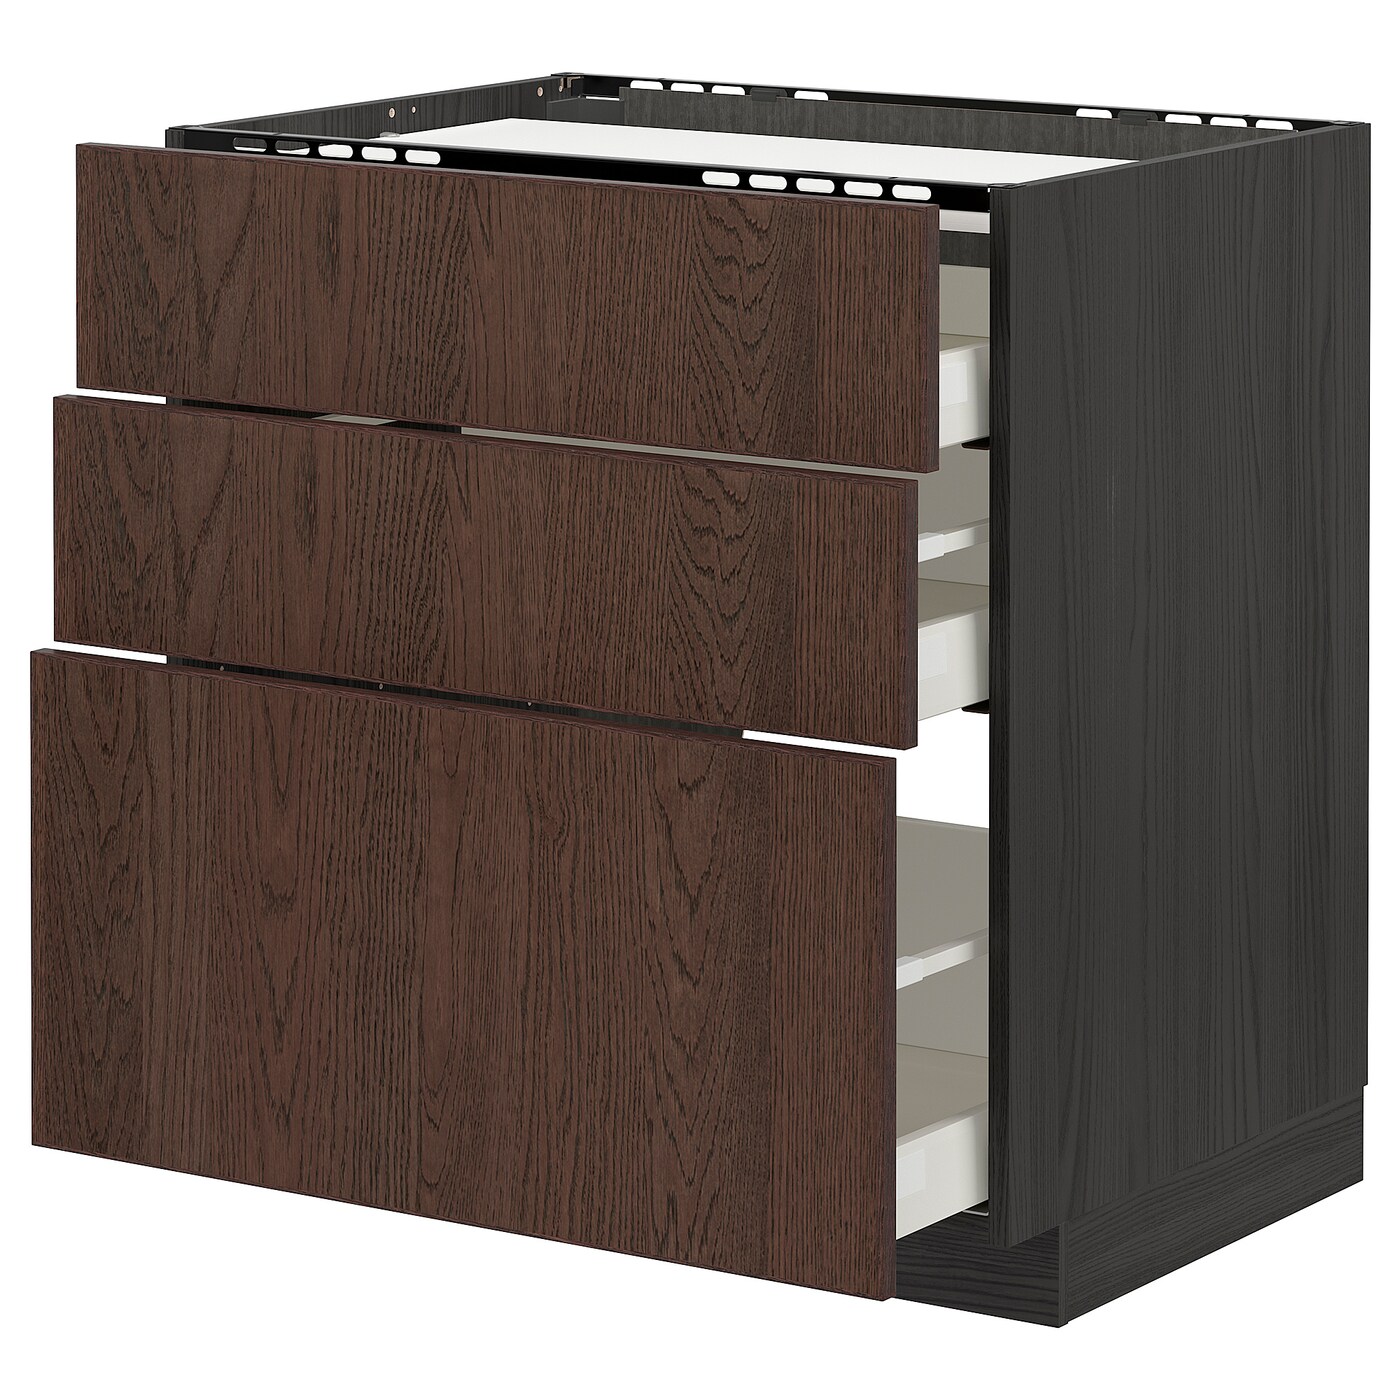 Напольный кухонный шкаф  - IKEA METOD MAXIMERA, 88x61,6x80см, черный/коричневый, МЕТОД МАКСИМЕРА ИКЕА